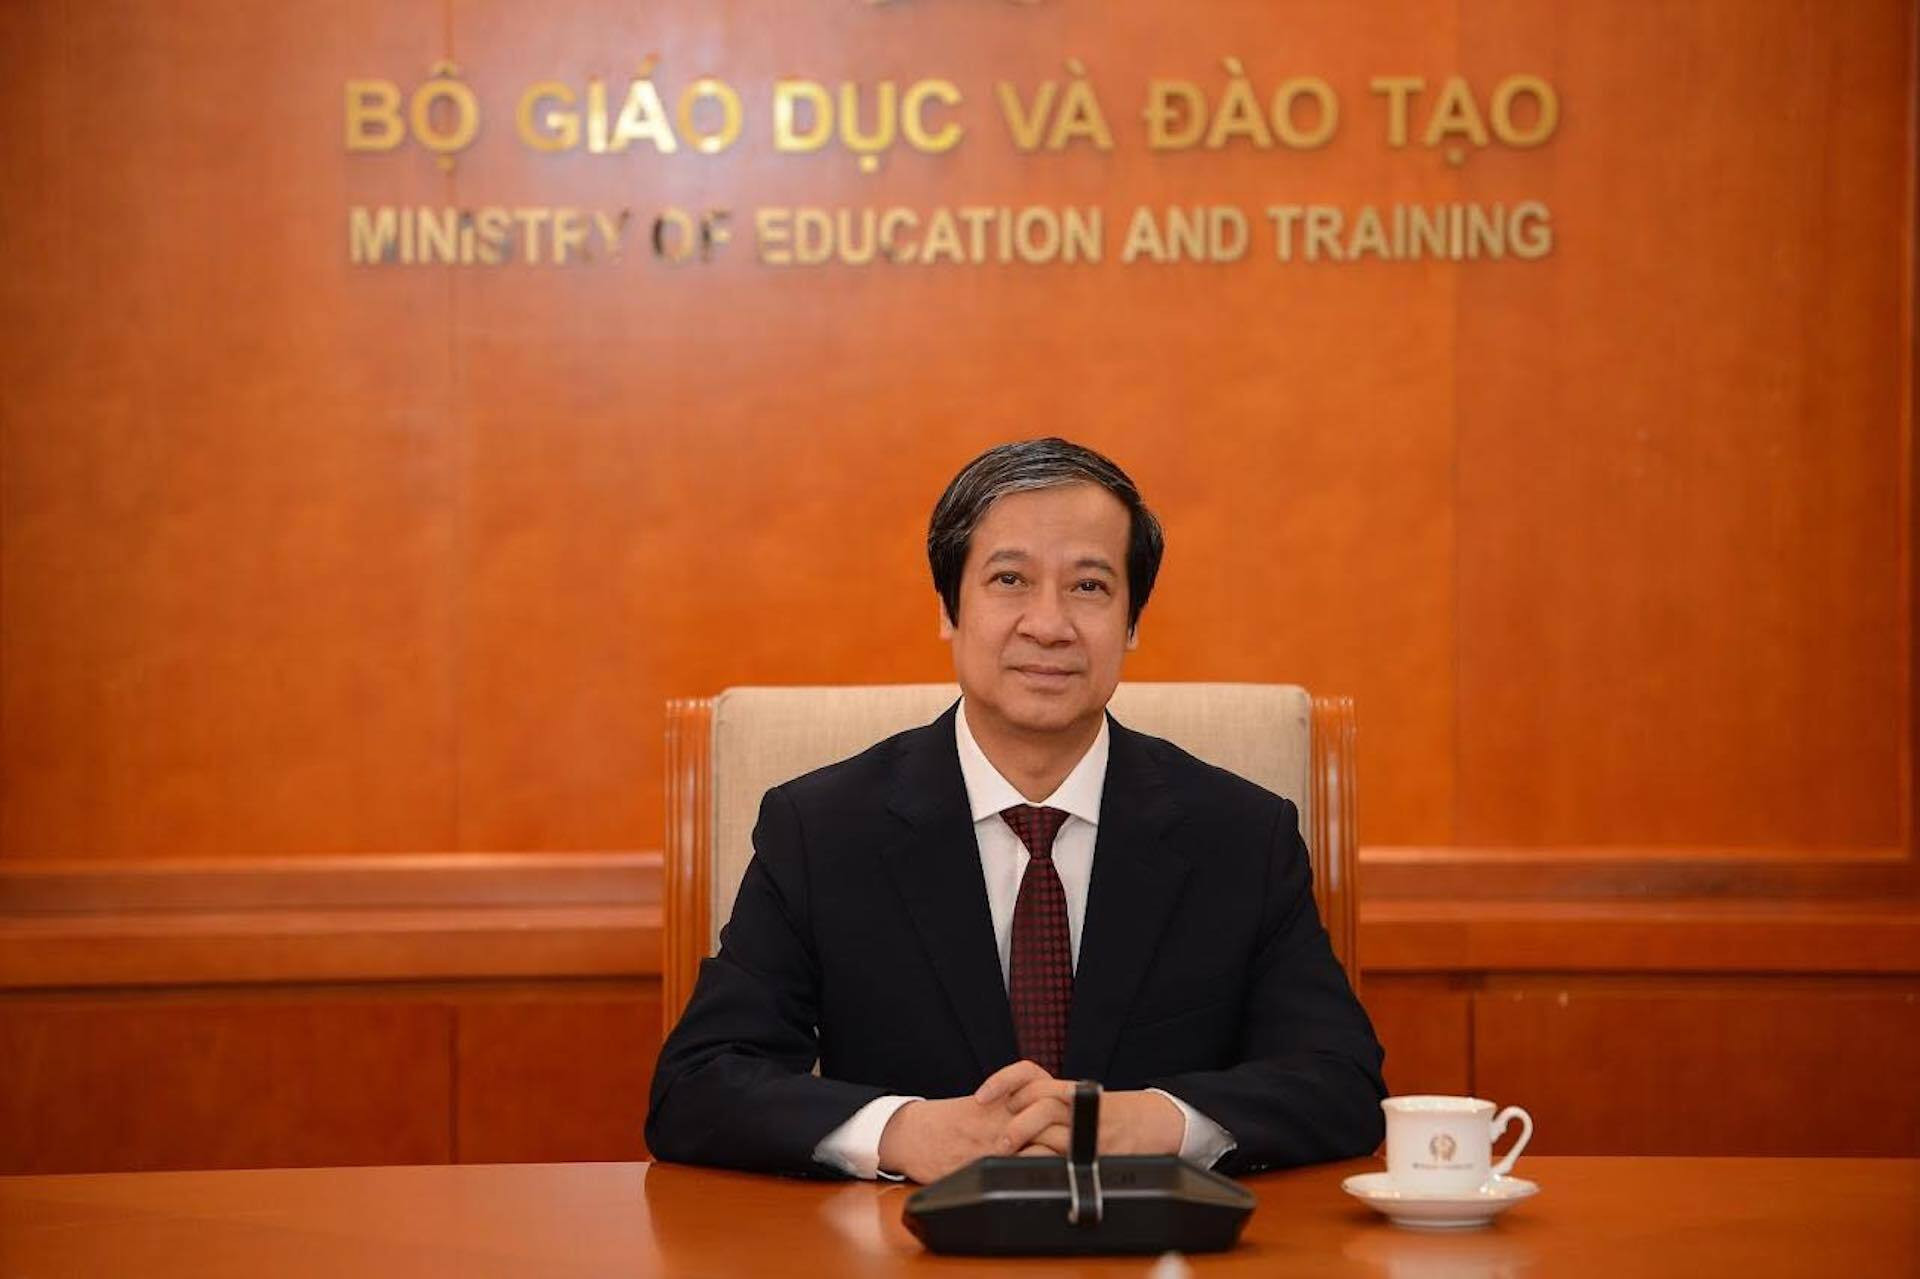 Tâm thư Bộ trưởng GD&ĐT Nguyễn Kim Sơn gửi giáo viên cả nước nhân ngày 20/11 - 1